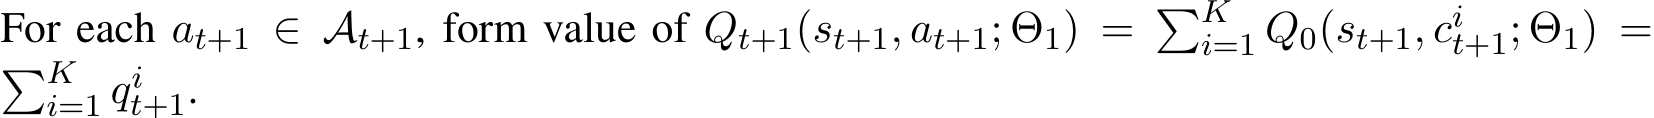  Qt+1(st+1, at+1; Θ1) = �Ki=1 Q0(st+1, cit+1; Θ1) =�Ki=1 qit+1.